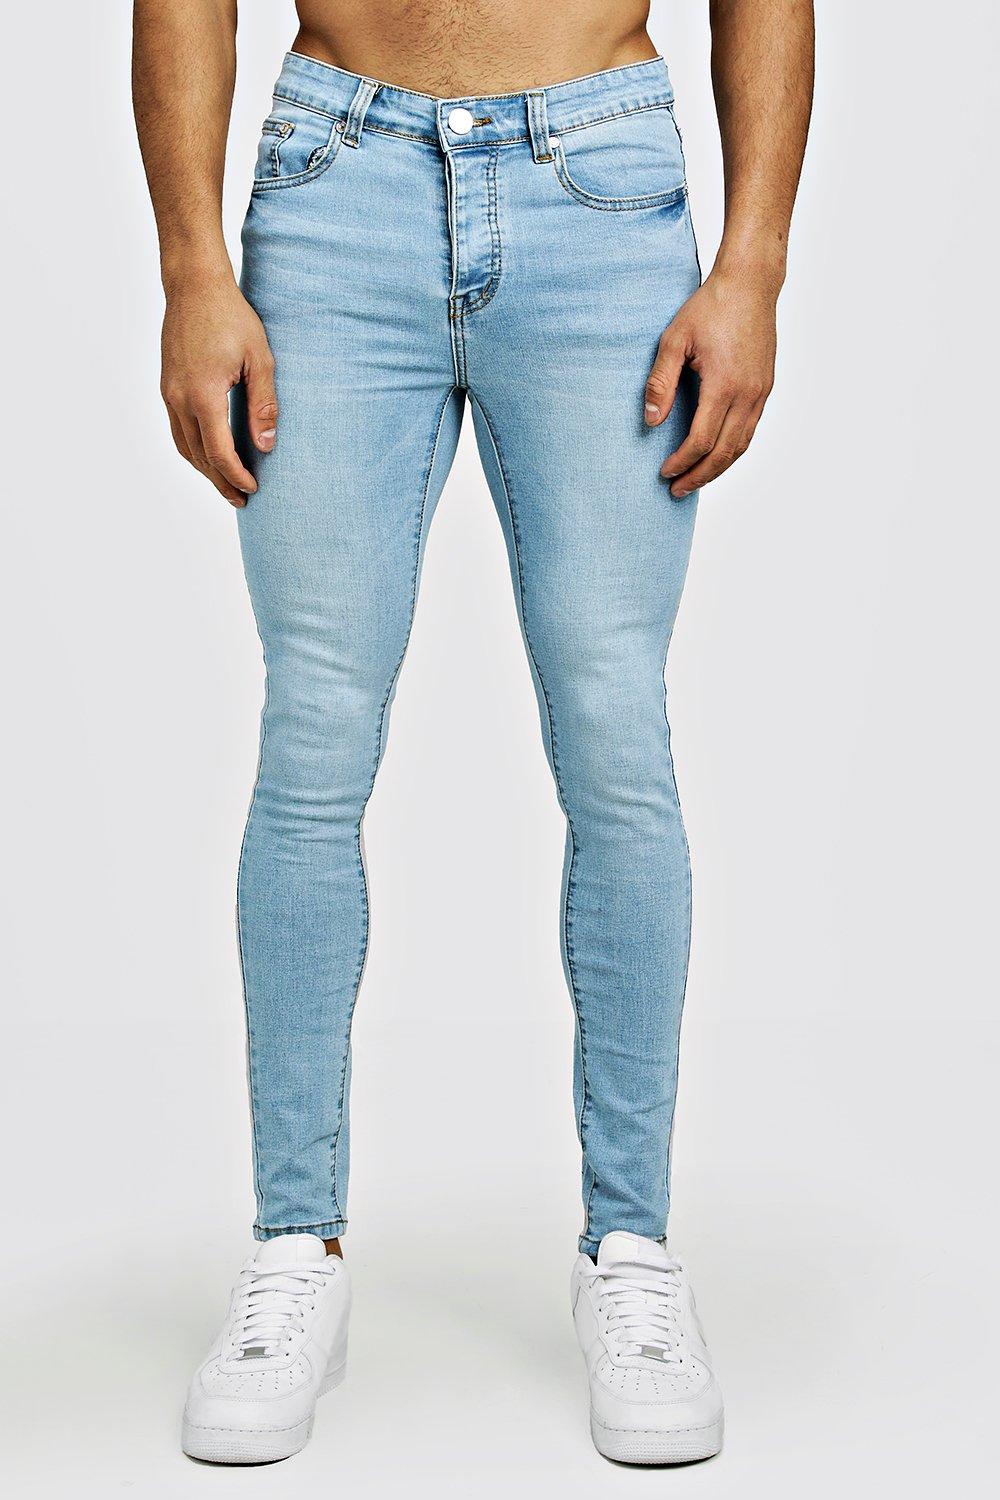 blue spray on skinny jeans